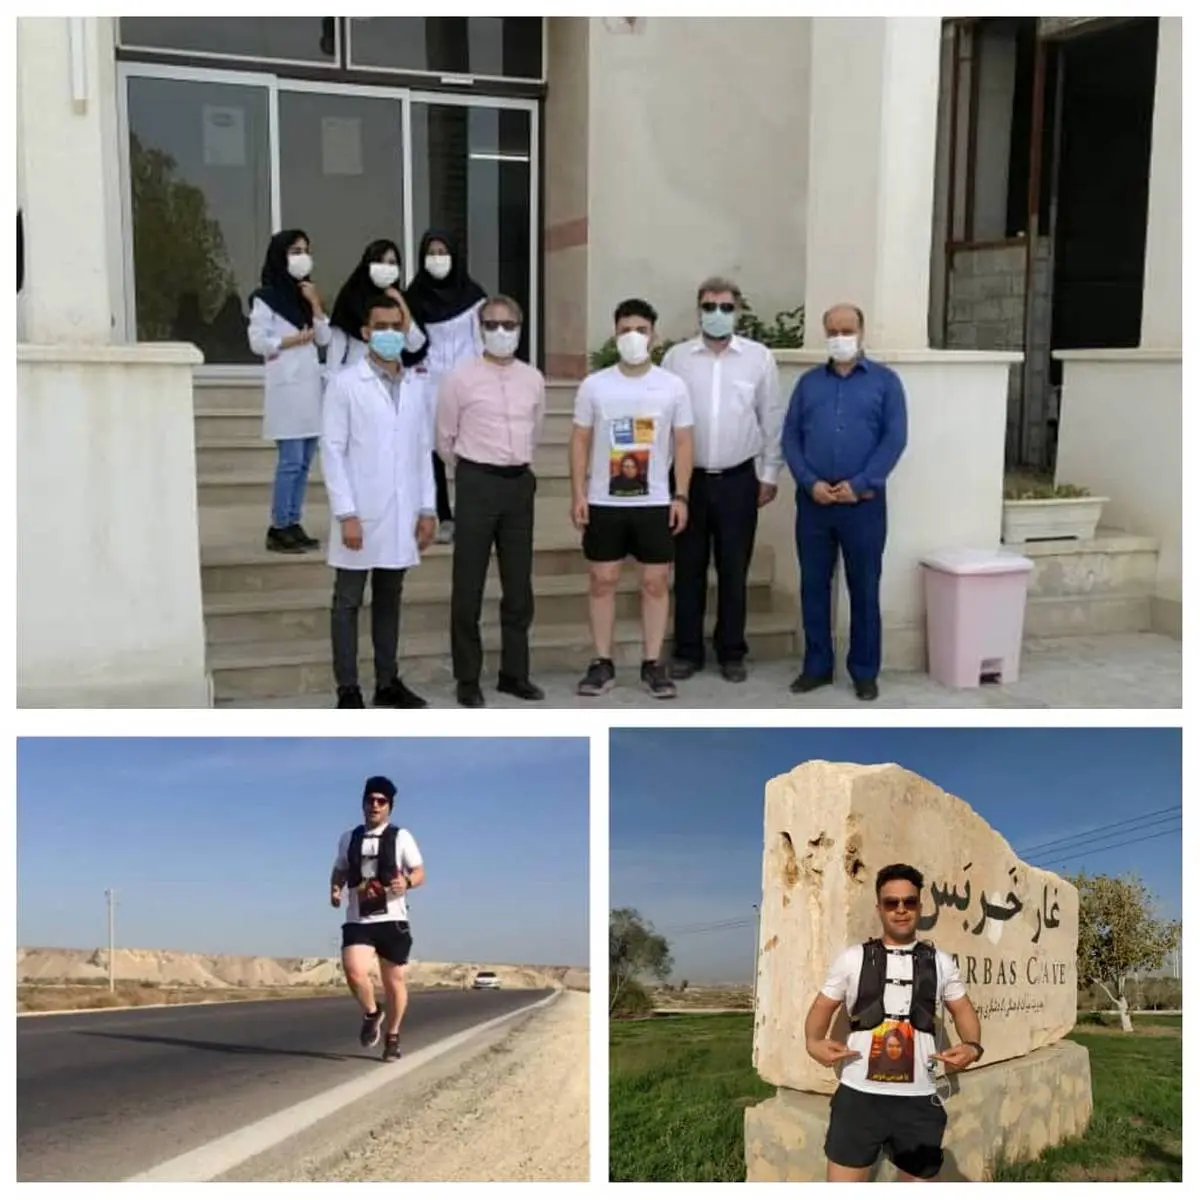 قدردانی از کادر درمان با پیمایش مسیر شهرقشم تا روستای جی جیان/ مرکز پزشکی خلیج فارس قشم میزبان استقامتی برادرانه

